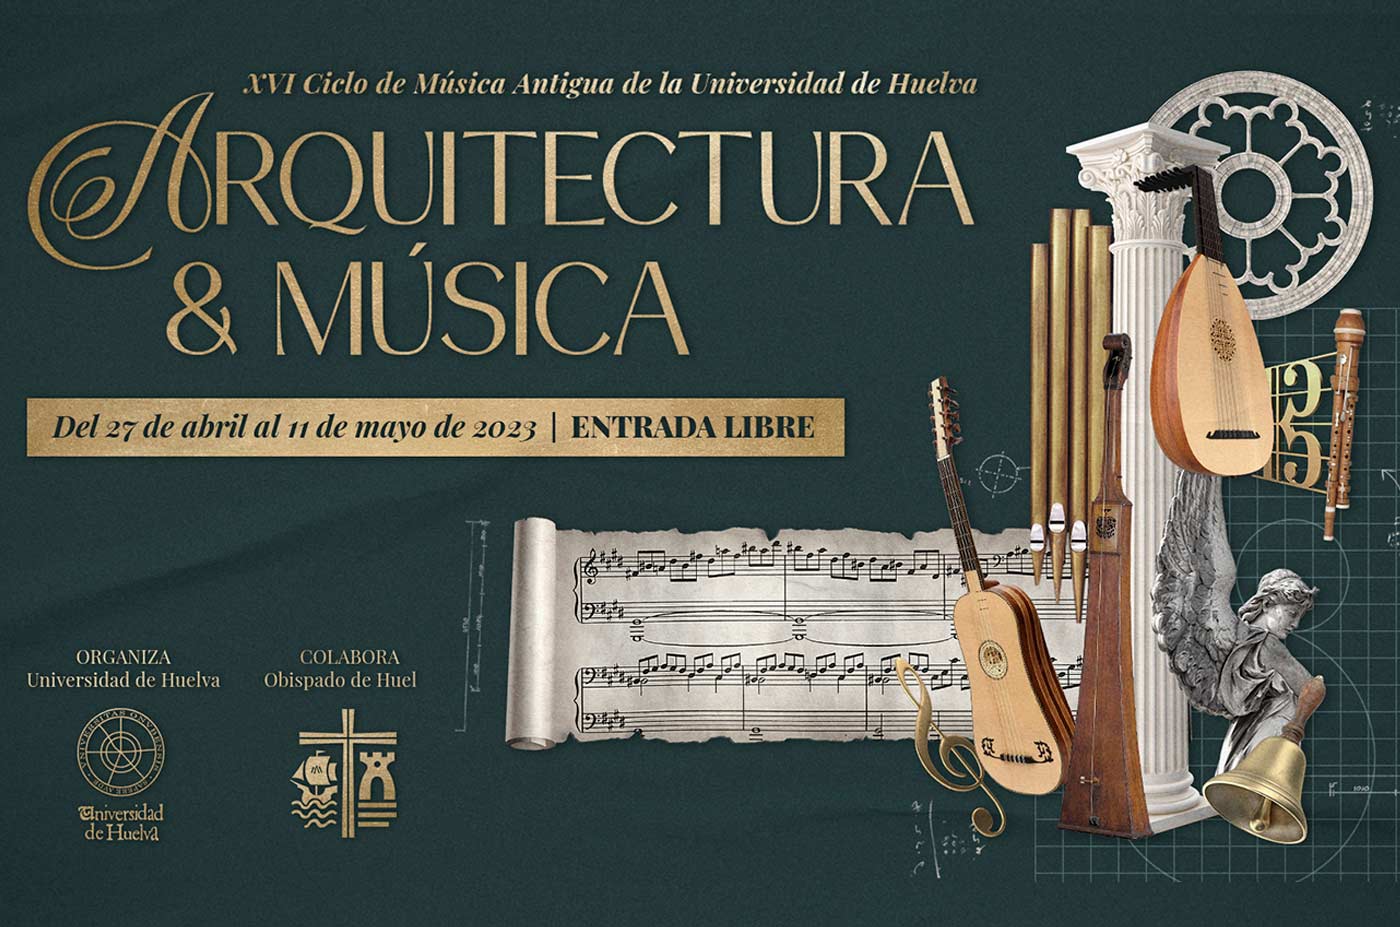 ciclo de arquitectura y musica antigua Universidad de Huelva del 27 de abril al 11 de mayo 2023